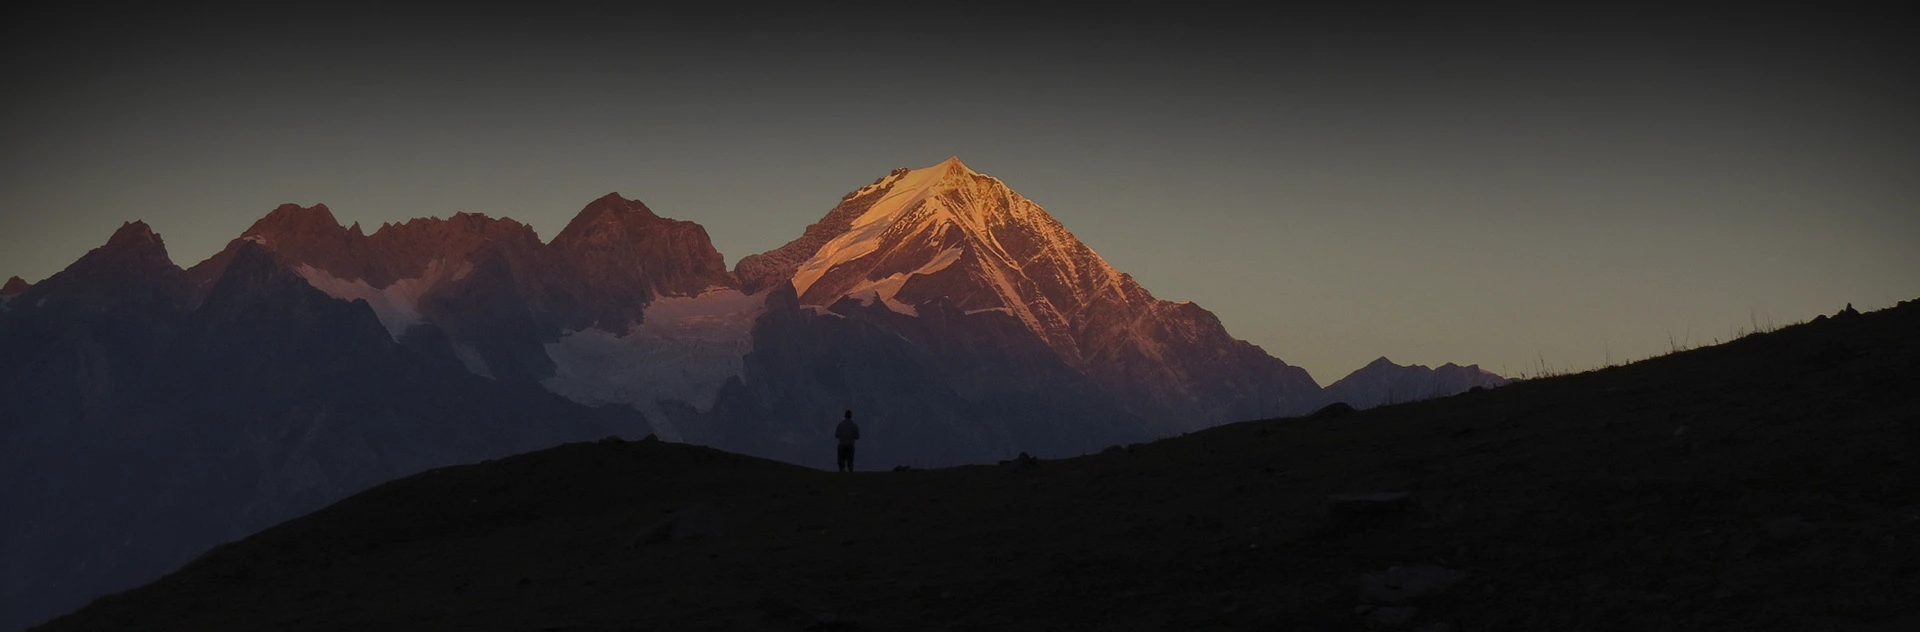 Trekking equipment for Nepal tours and trekking